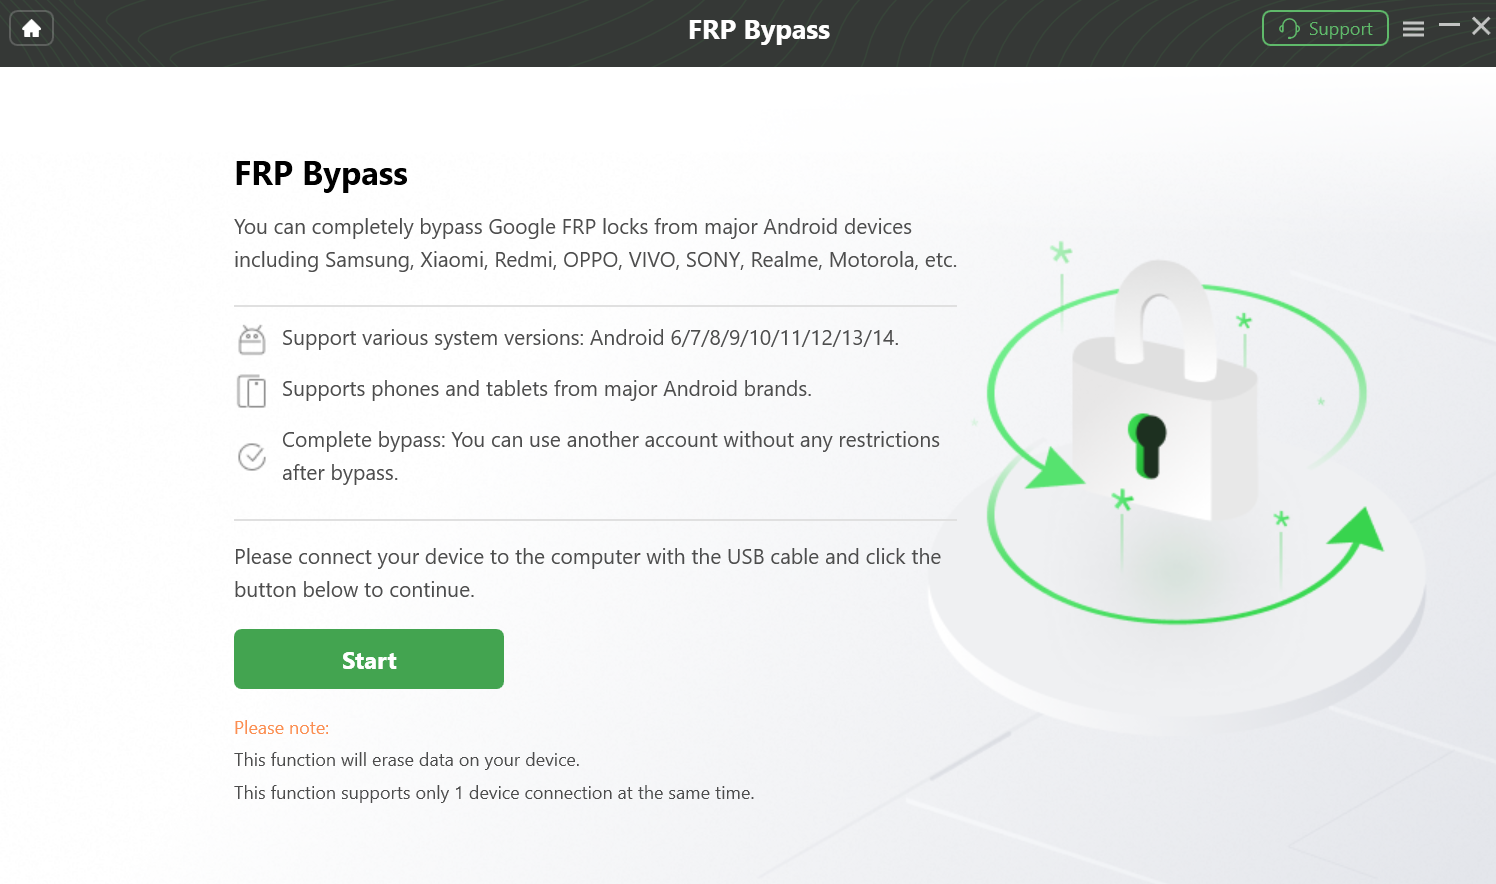 Click “Start” Button to Bypass FRP Lock